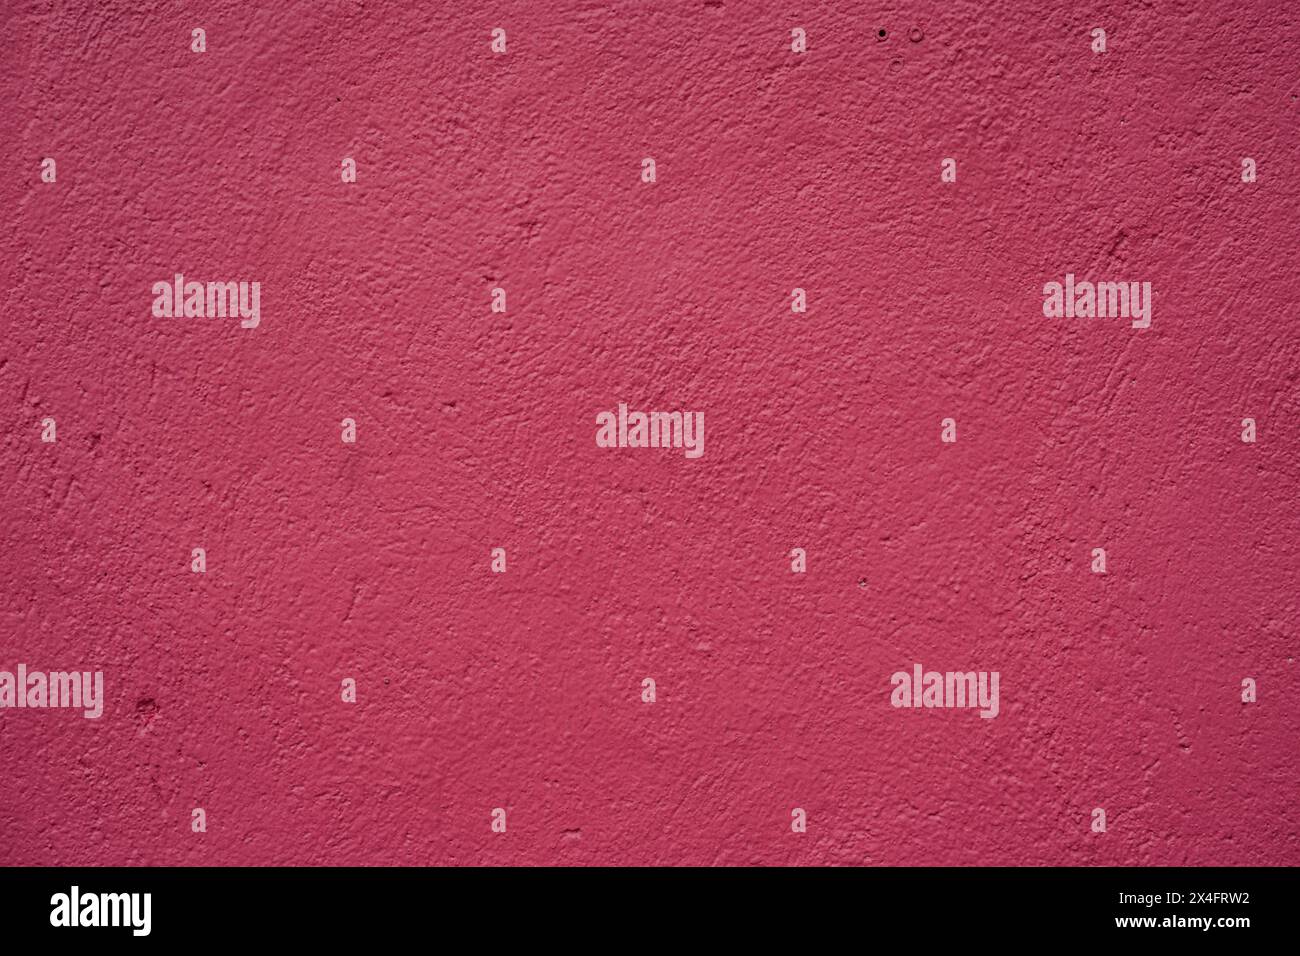 Questa immagine ad alta risoluzione mostra una vista ravvicinata di una parete rosa testurizzata (tipica di Malacca). Ideale per l'uso in background in vari progetti di progettazione Foto Stock